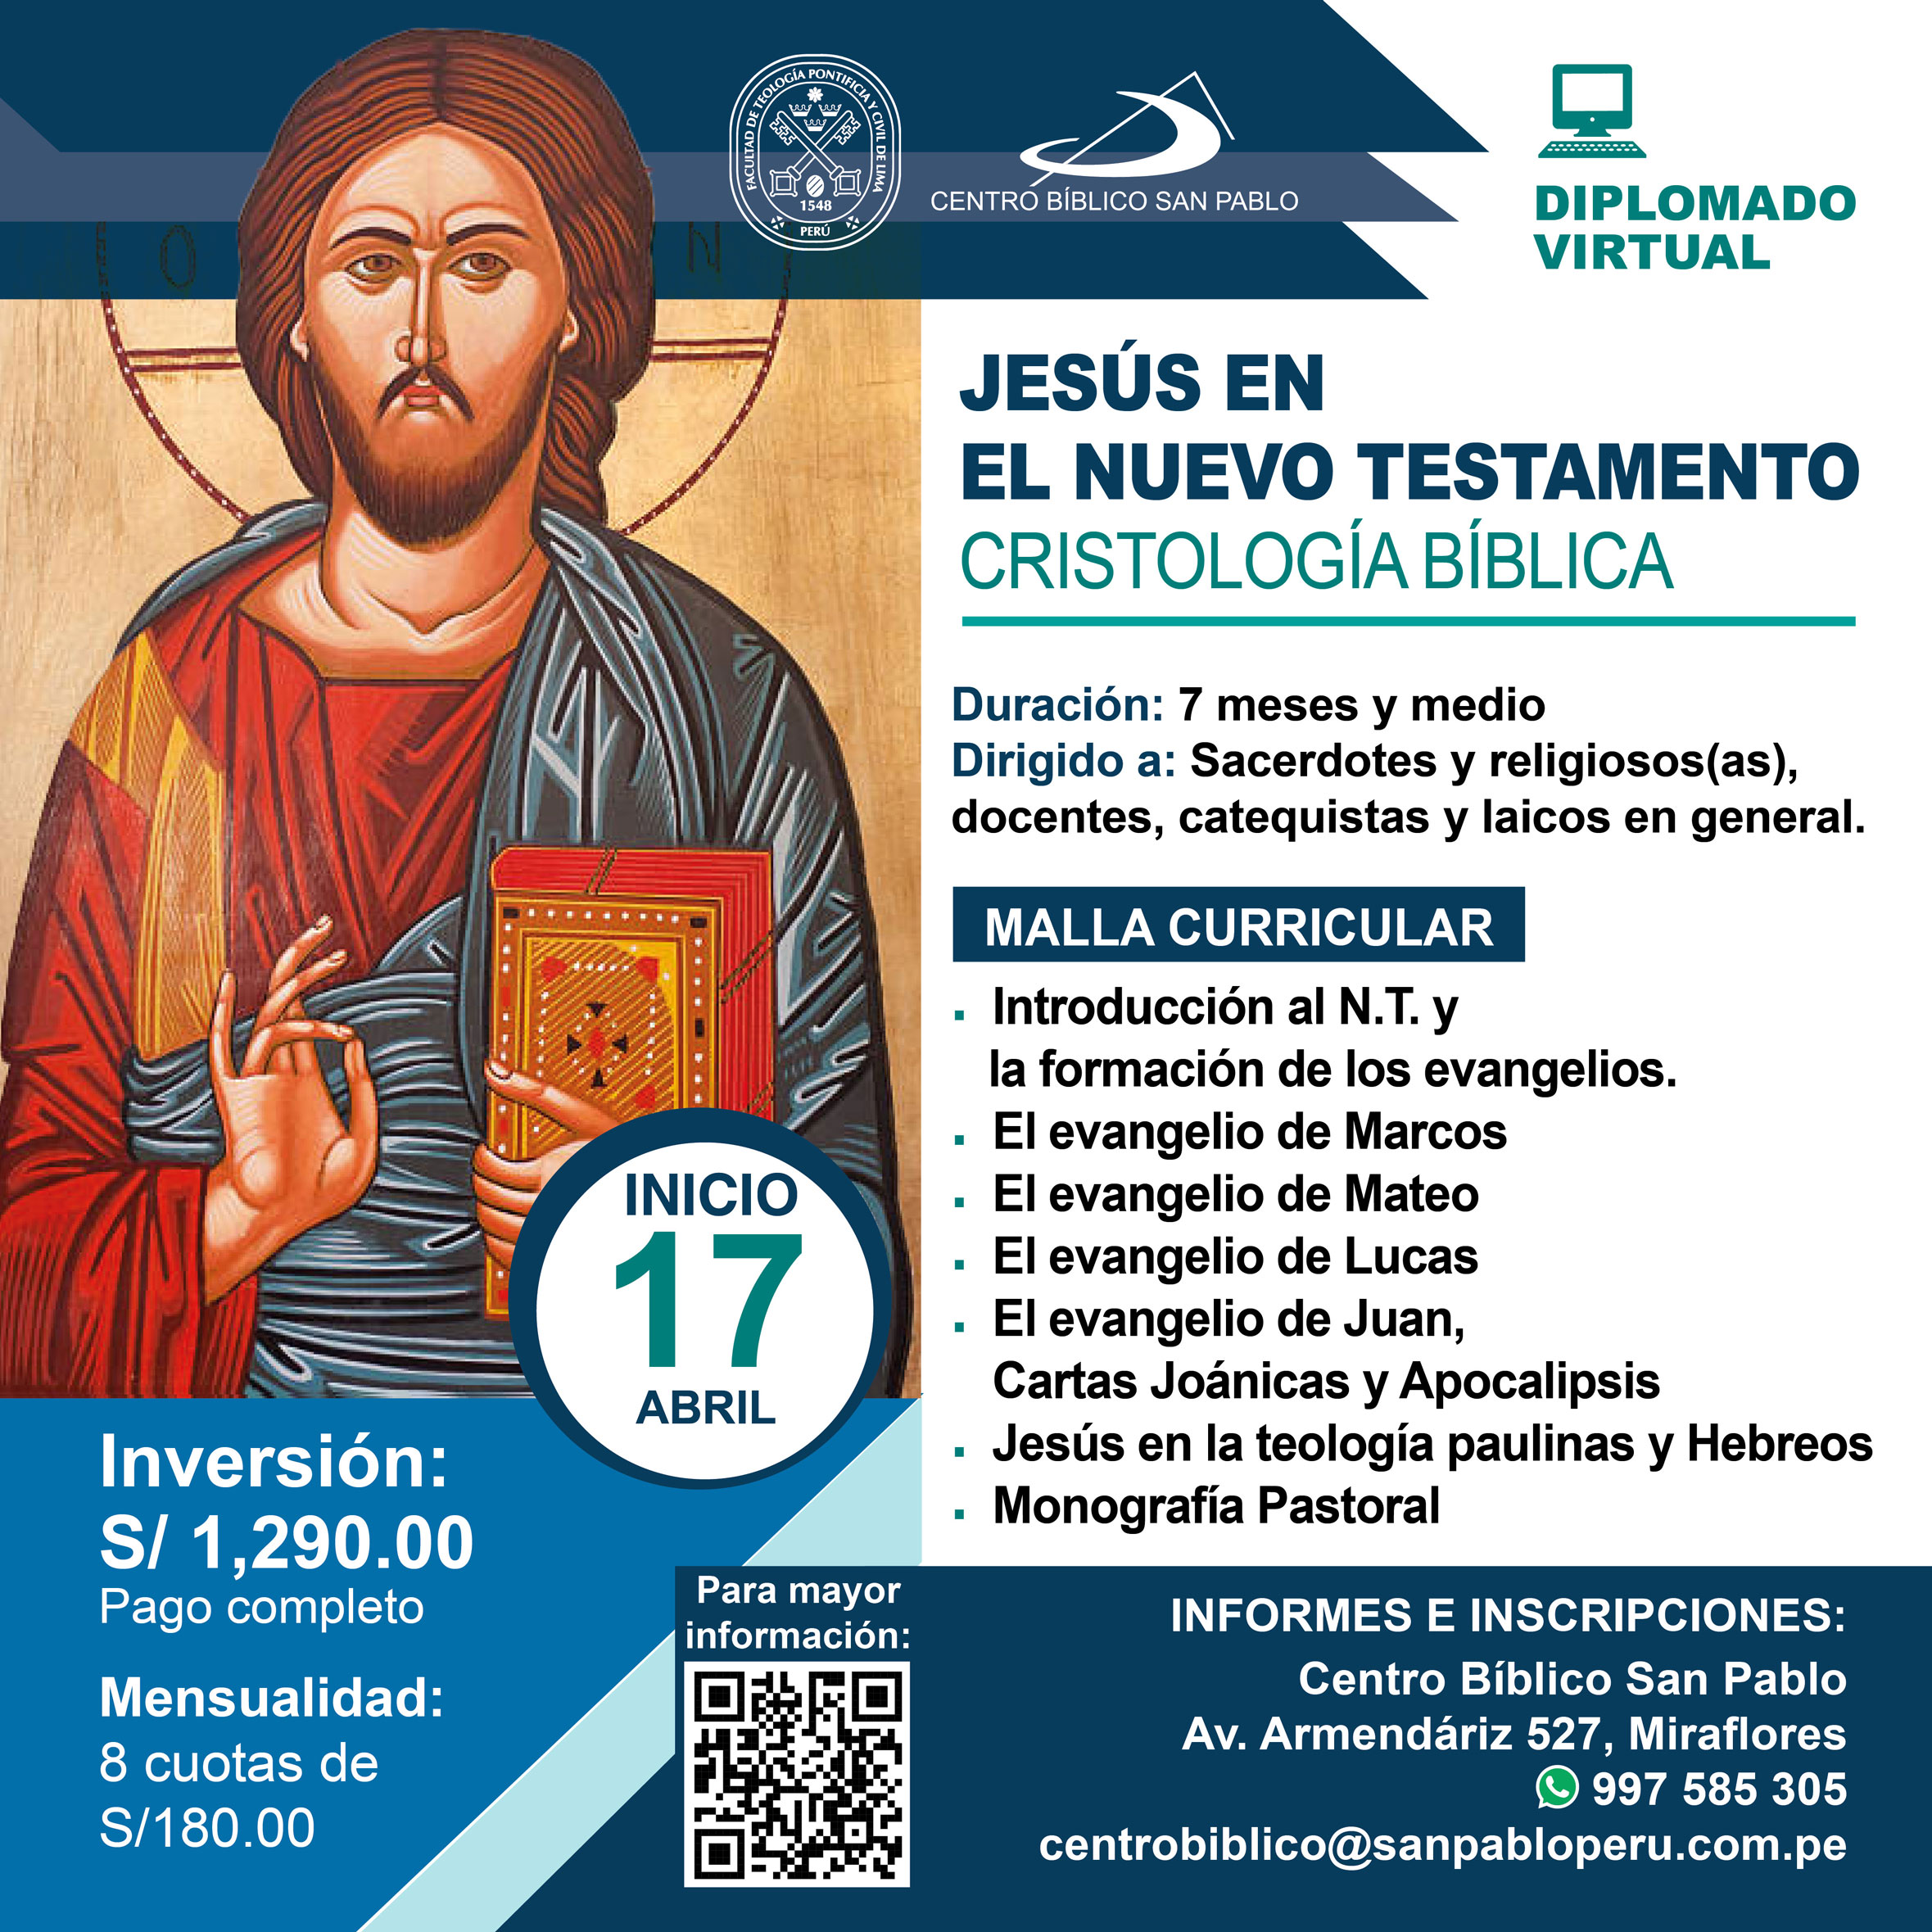 Diplomado Virtual: "Jesús en el Nuevo Testamento, Cristología Bíblica" 2023